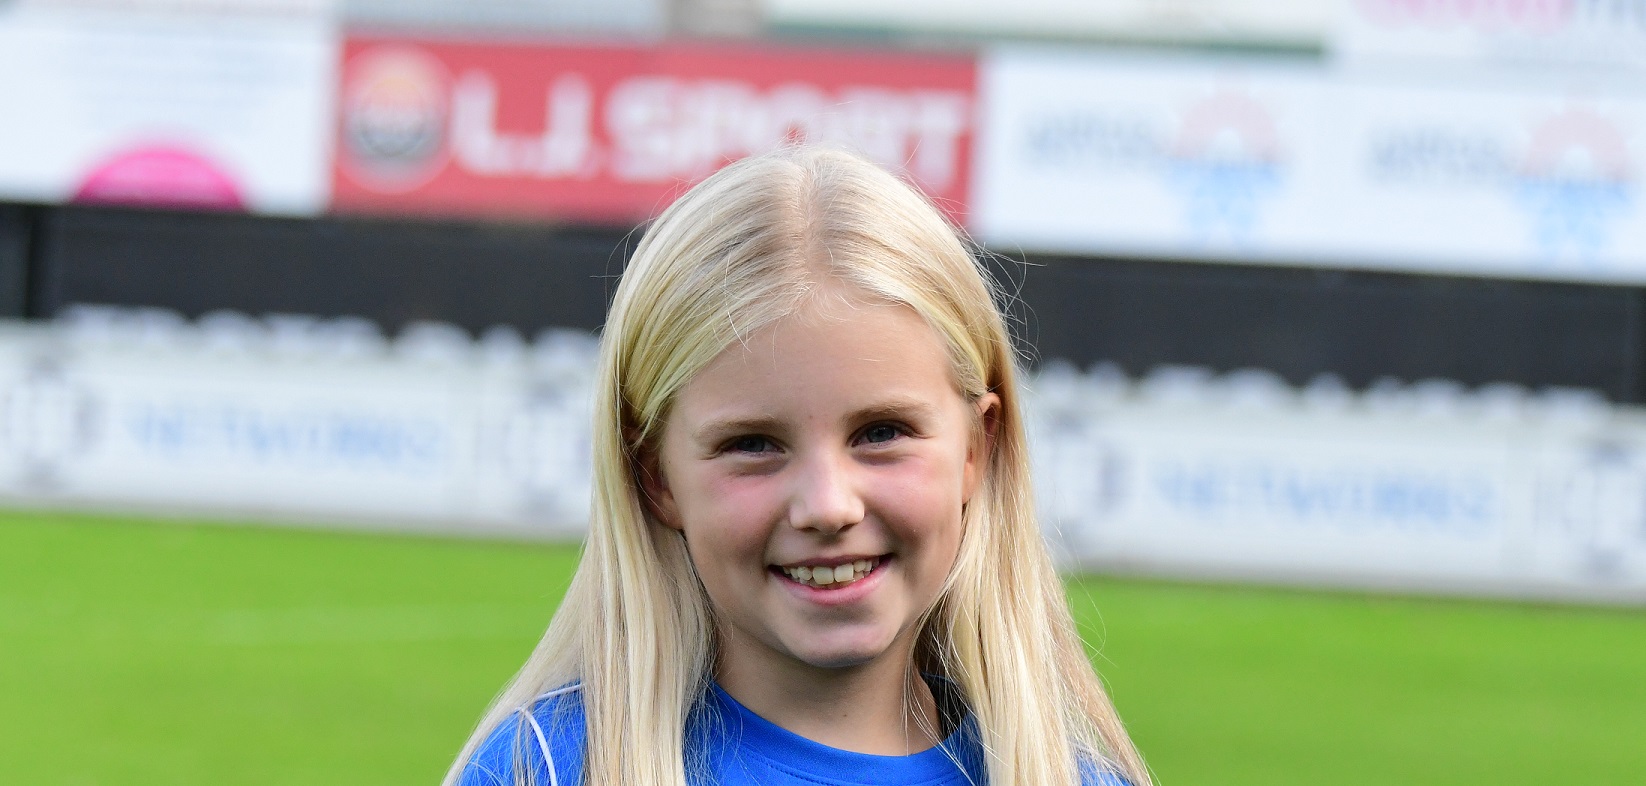 Megan van Veelen is Pupil van de week bij FC Lisse – Scheveningen